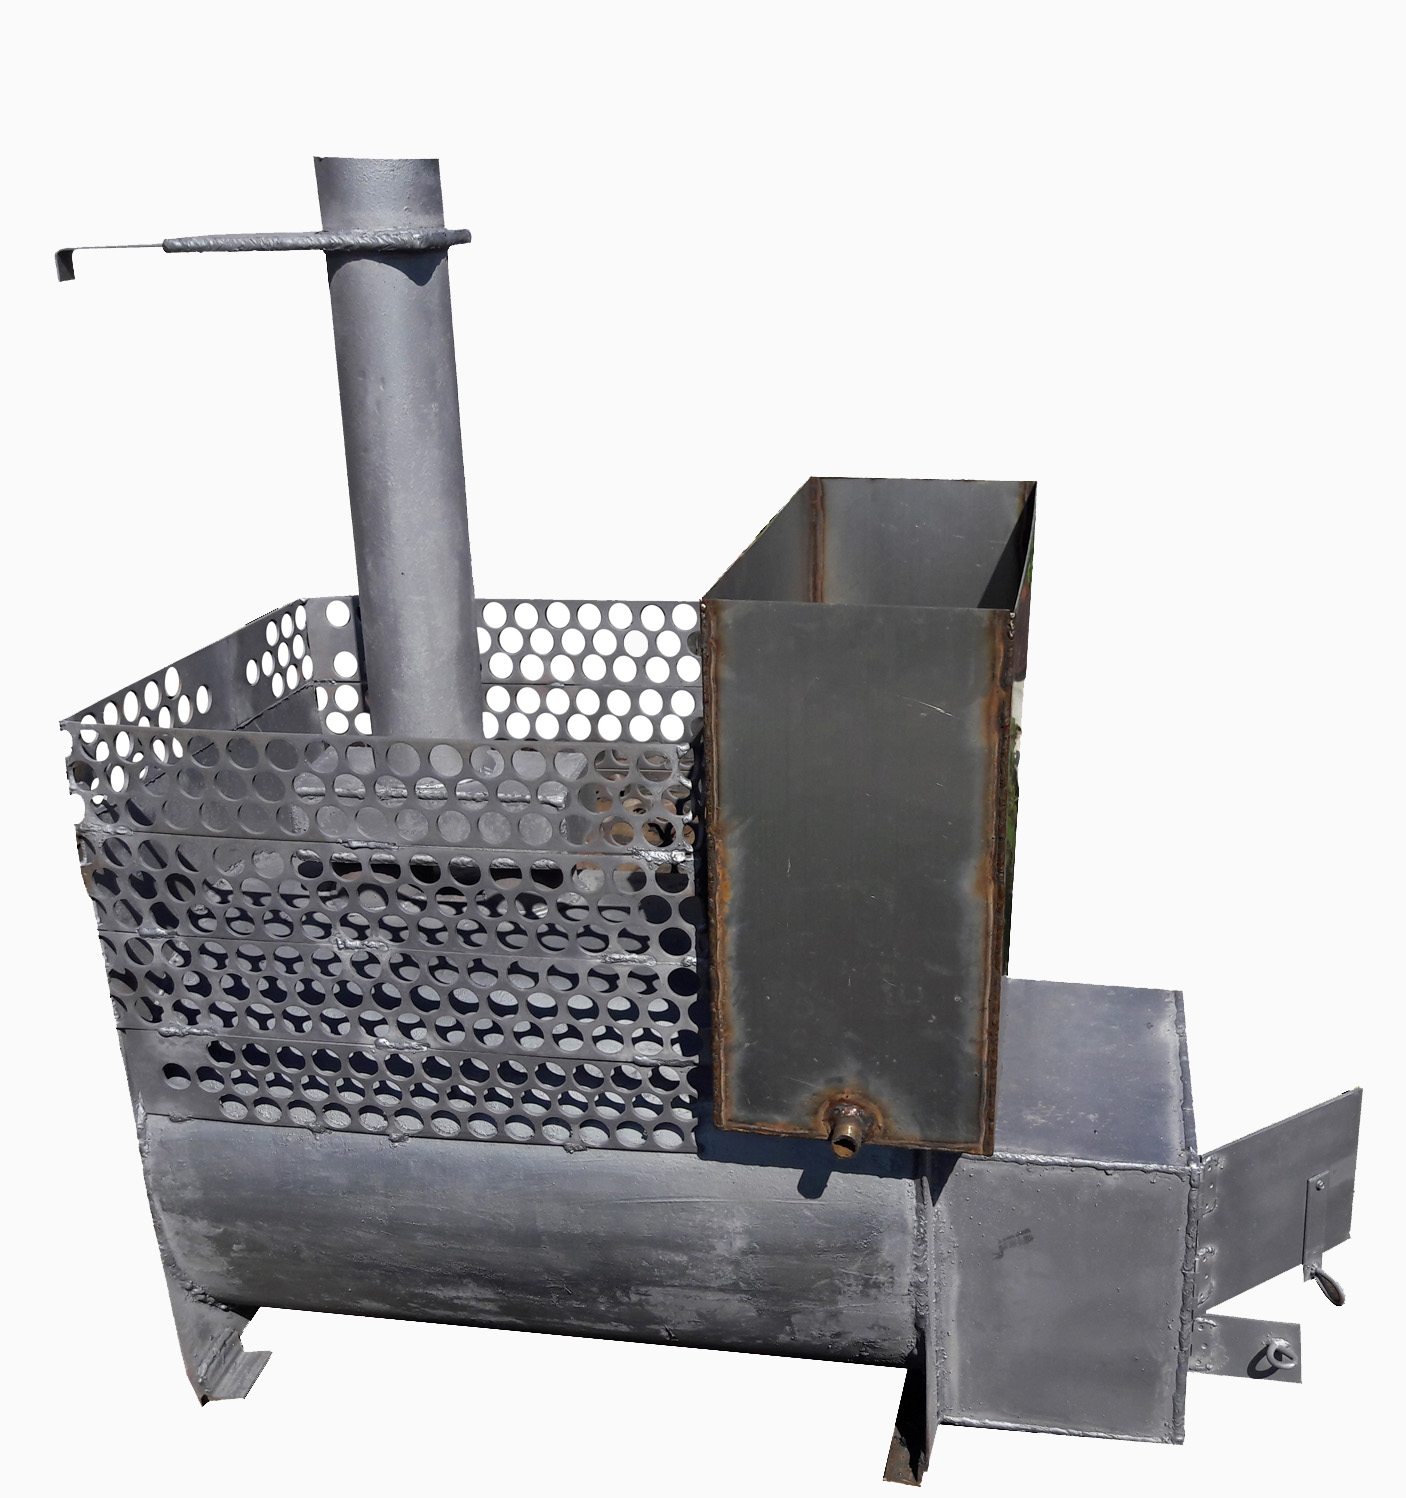 Чертежи банной печи из металла: железные печи для бани своими руками, размеры конструкции, схема металлической самодельной печки, изготовление